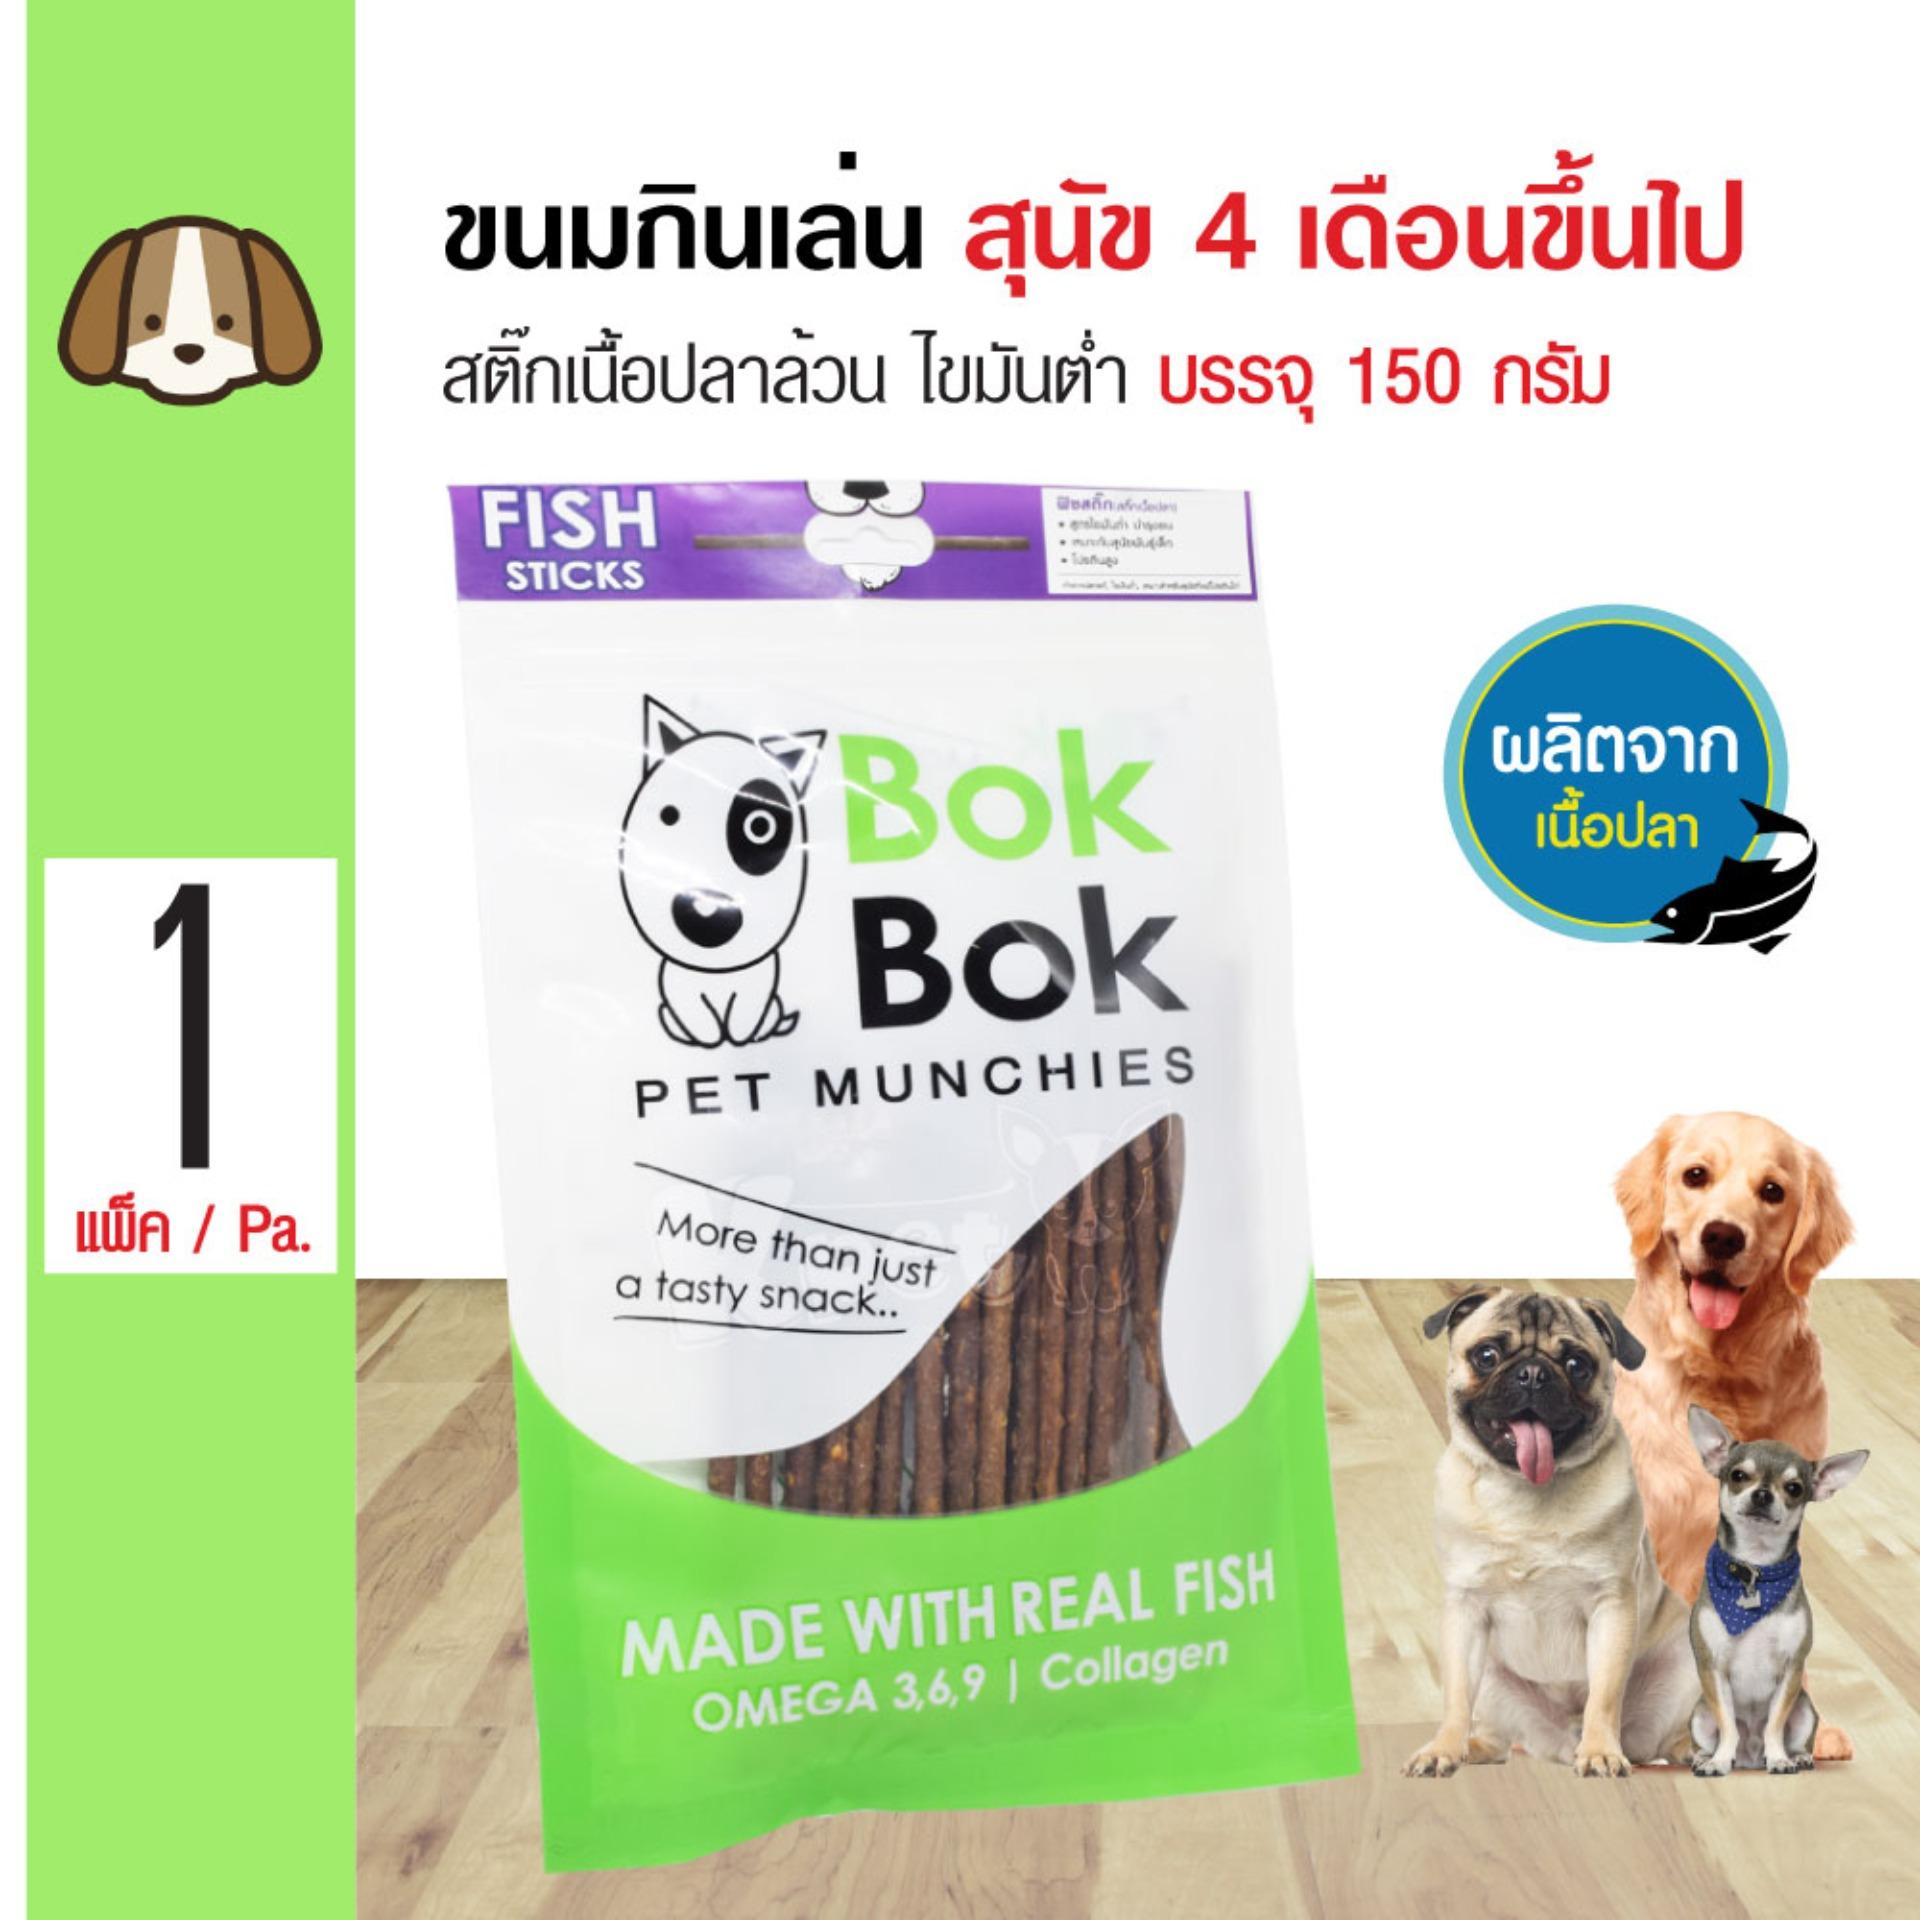 Bok Bok Fish Stick ขนมสุนัข สติ๊กเนื้อปลาล้วน ไขมันต่ำ บำรุงขน สำหรับสุนัขทุกสายพันธุ์ (150 กรัม/ซอง)